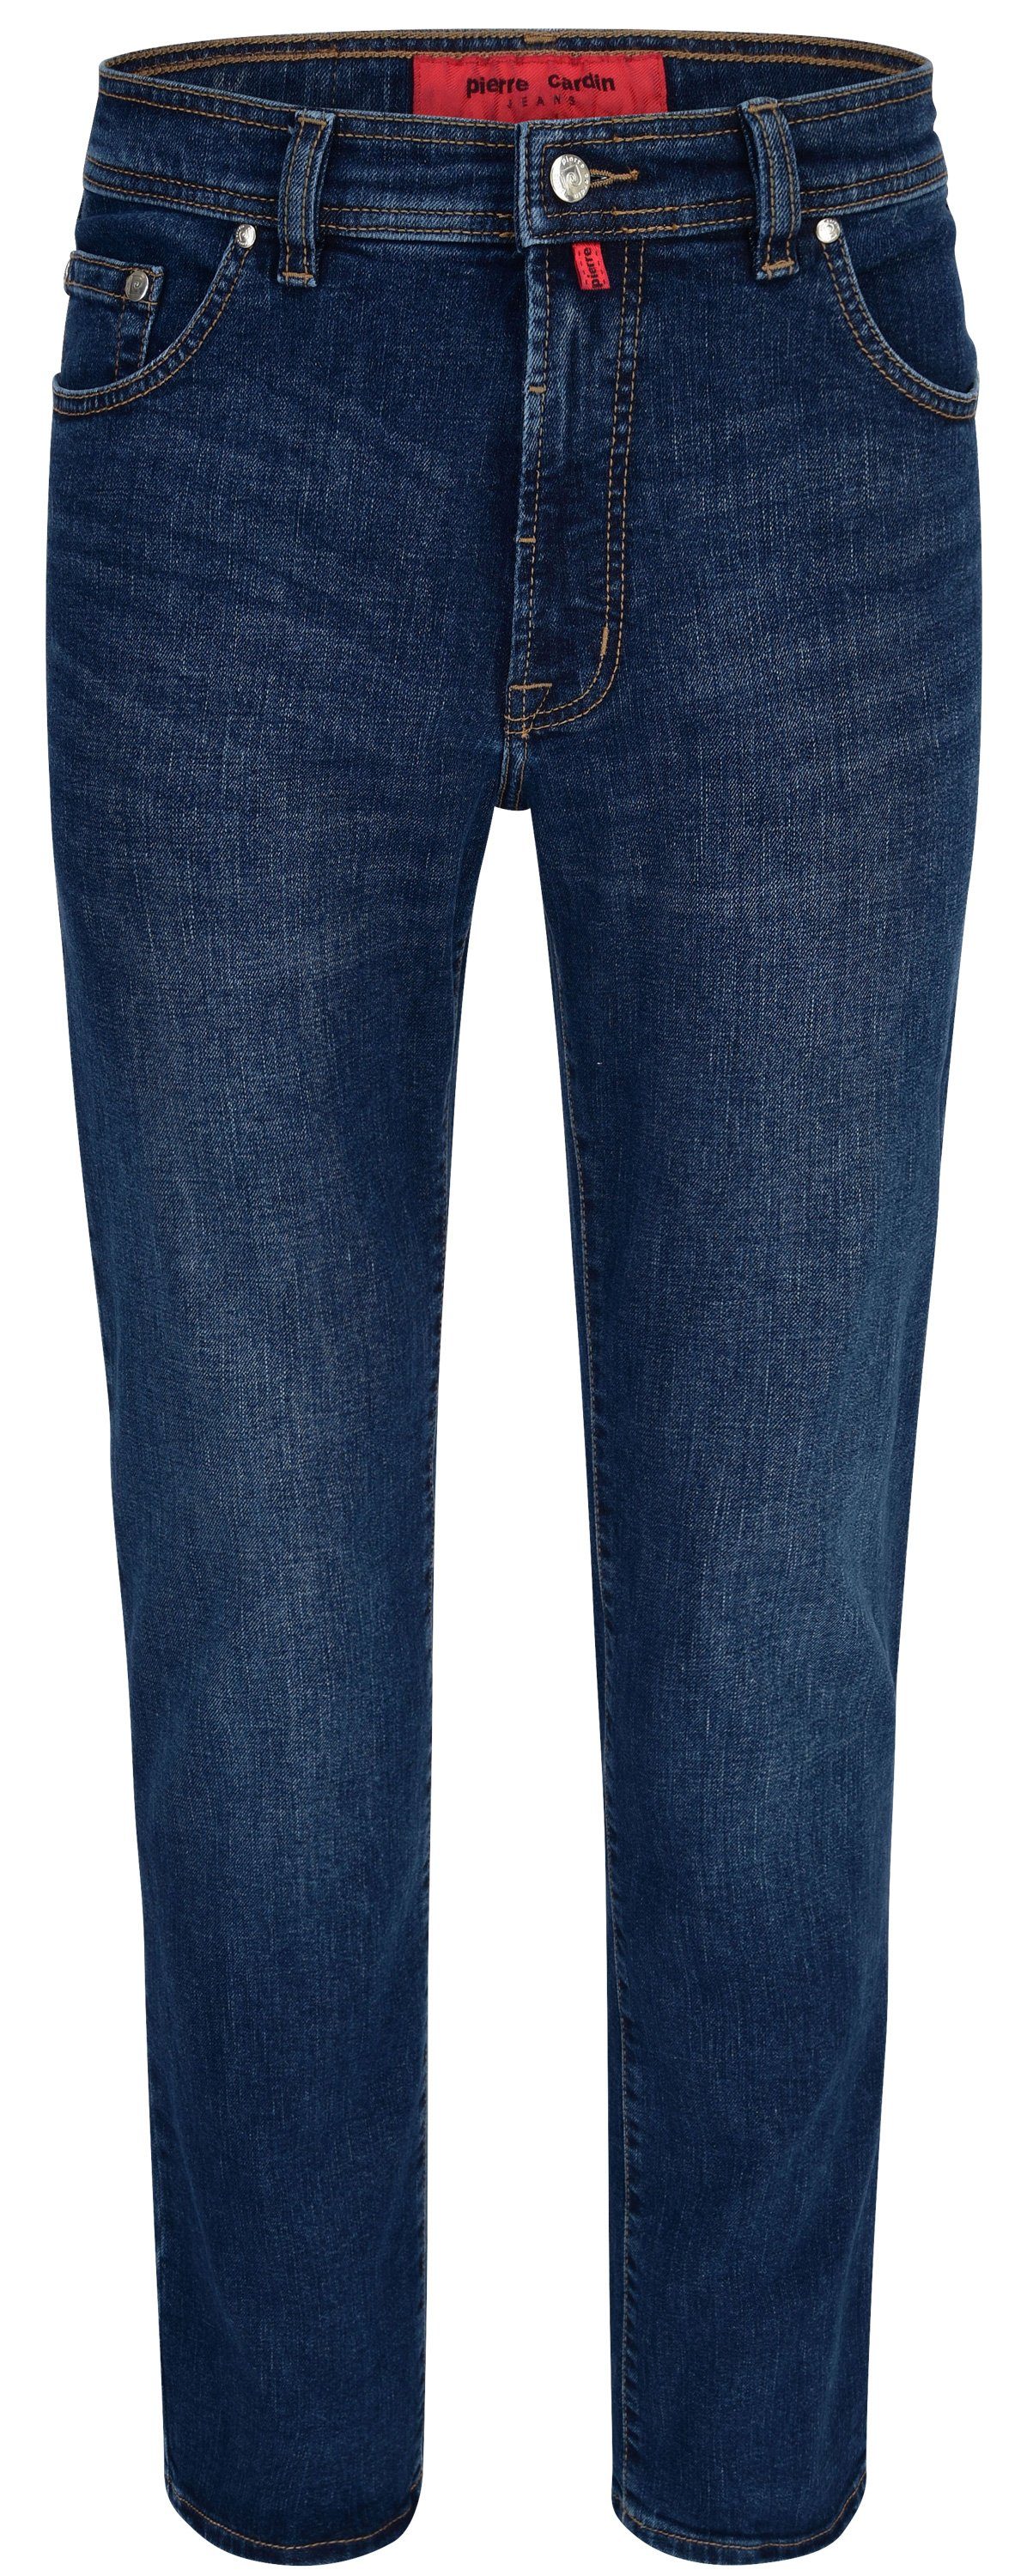 Pierre Cardin 5-Pocket-Jeans PIERRE CARDIN DIJON blue 3231 7350.07 - DENIM EDITION